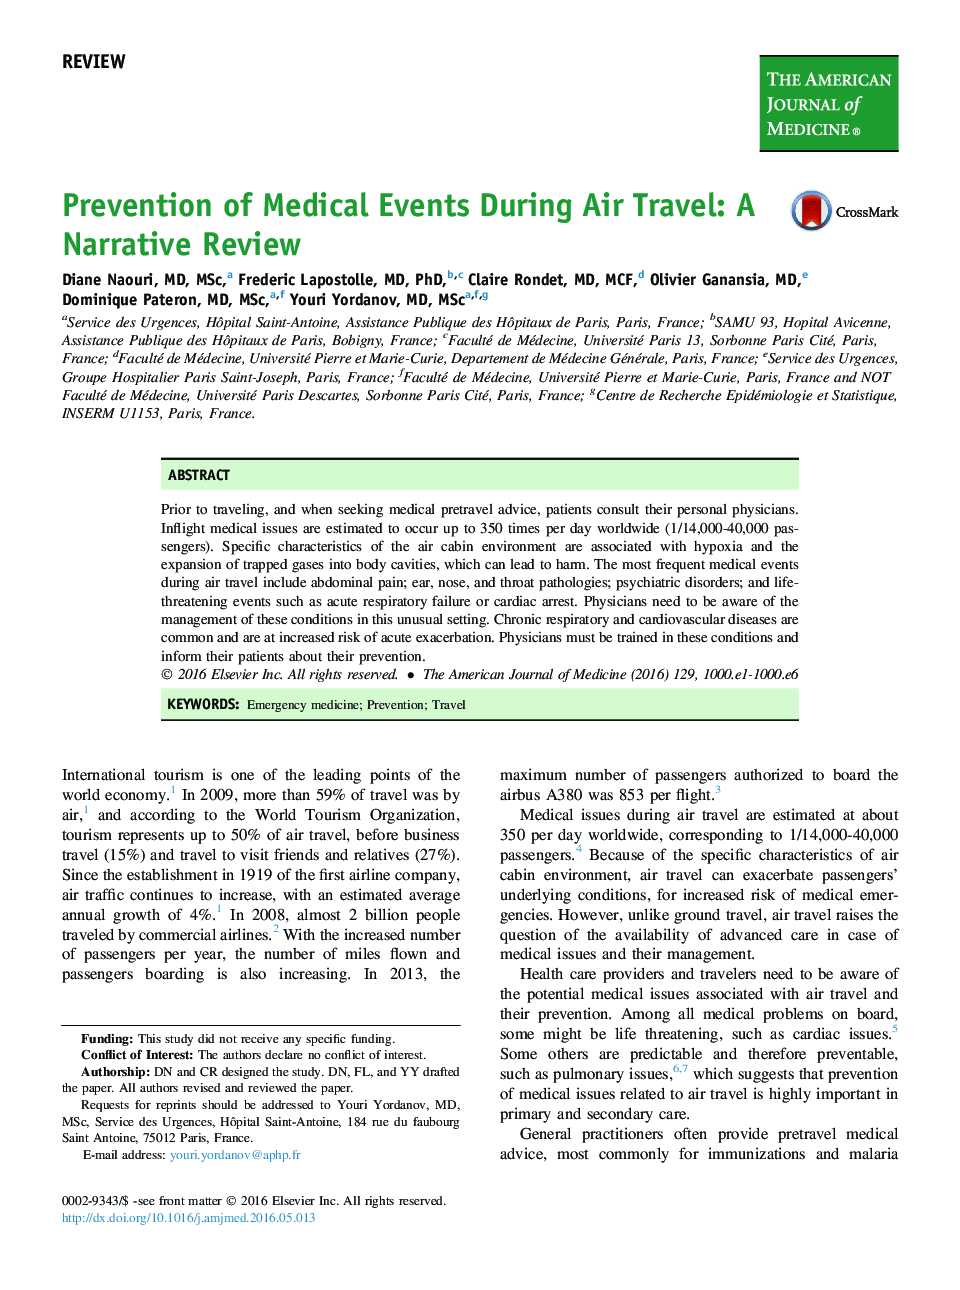 پیشگیری از رویدادهای پزشکی در طی سفر هوایی: نقد روایت 